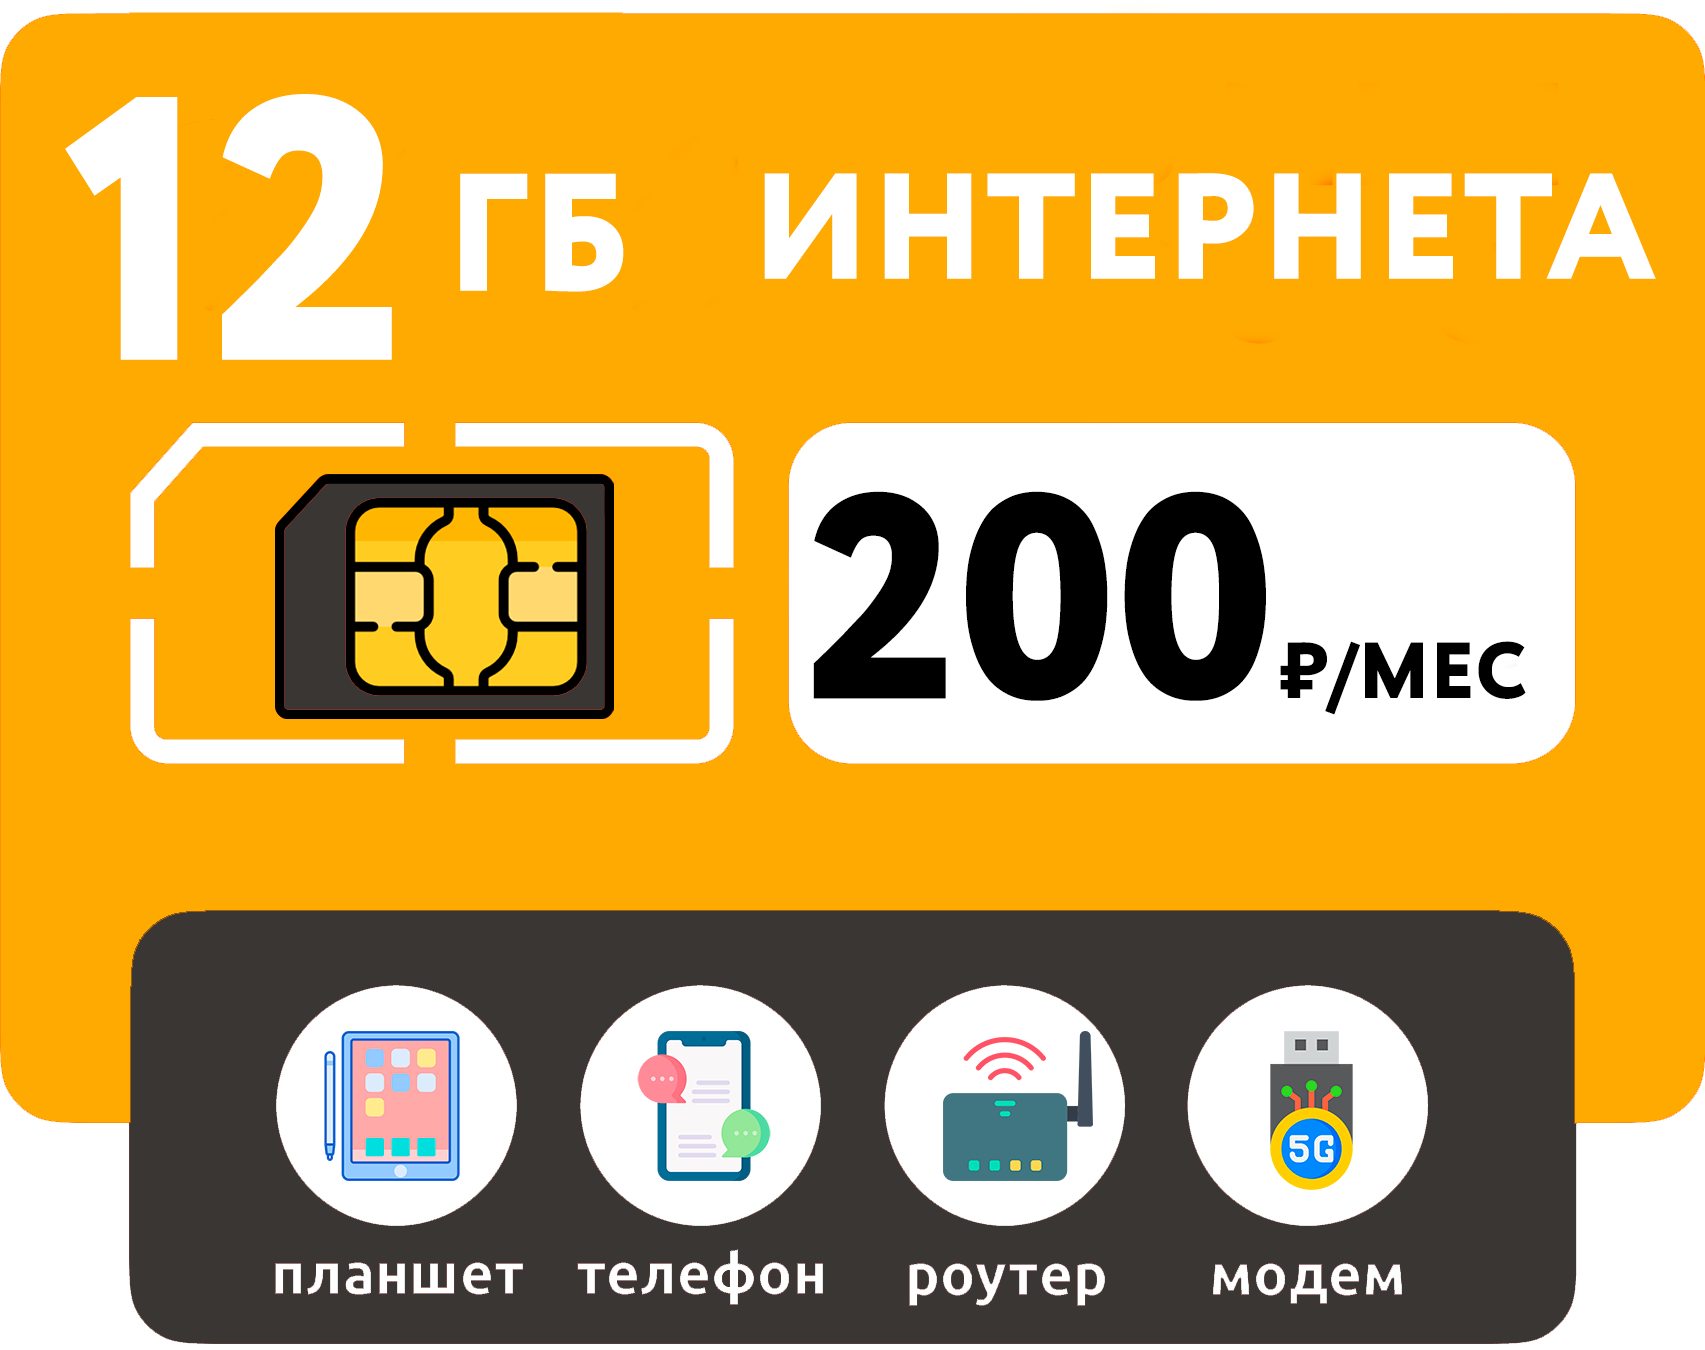 SIM-карта 12 Гб интернета 3G/4G за 200 руб/мес (смартфоны модемы роутеры планшеты) + раздача и торренты (Вся Россия)